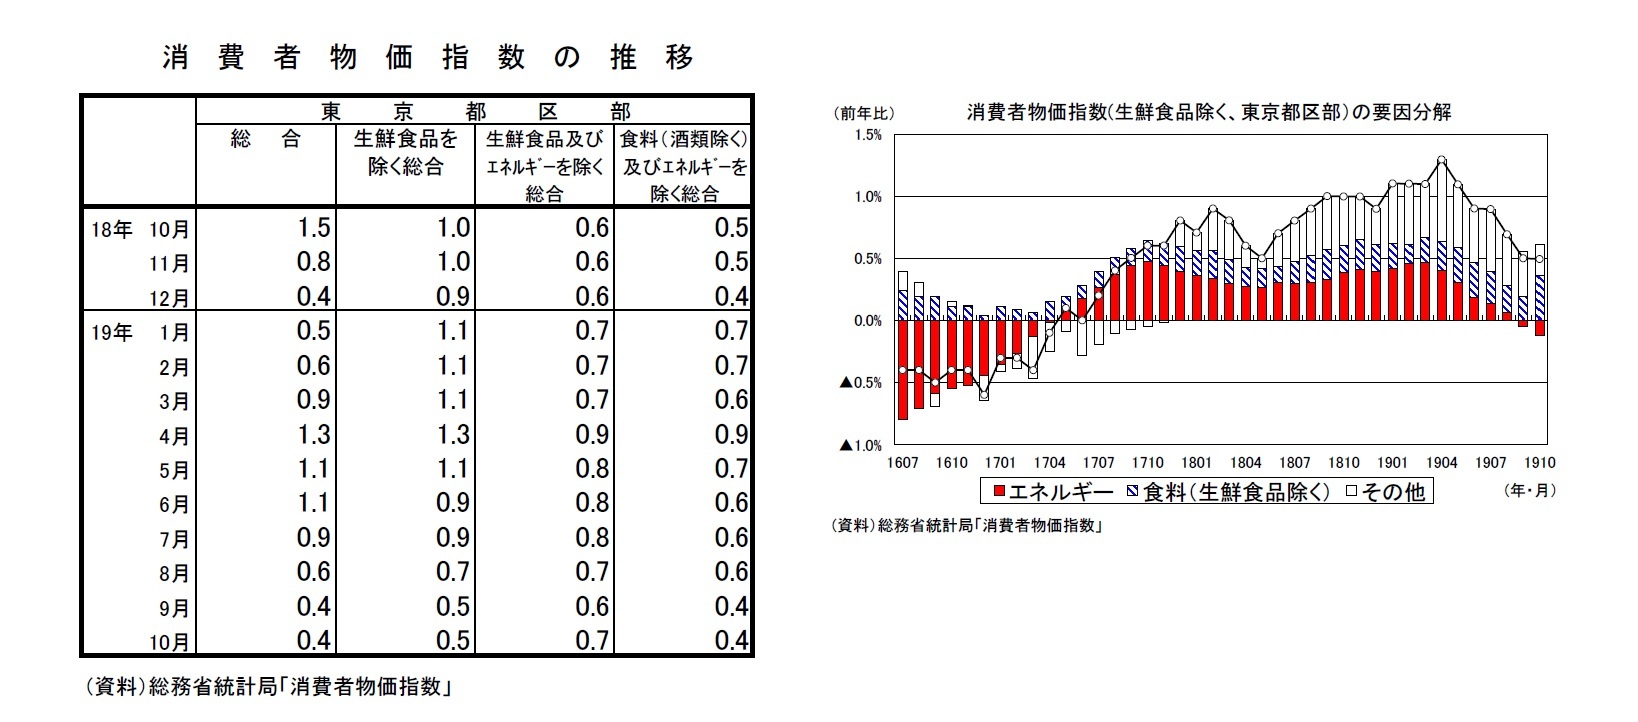 消費者物価指数の推移/消費者物価指数(生鮮食品除く、東京都区部）の要因分解